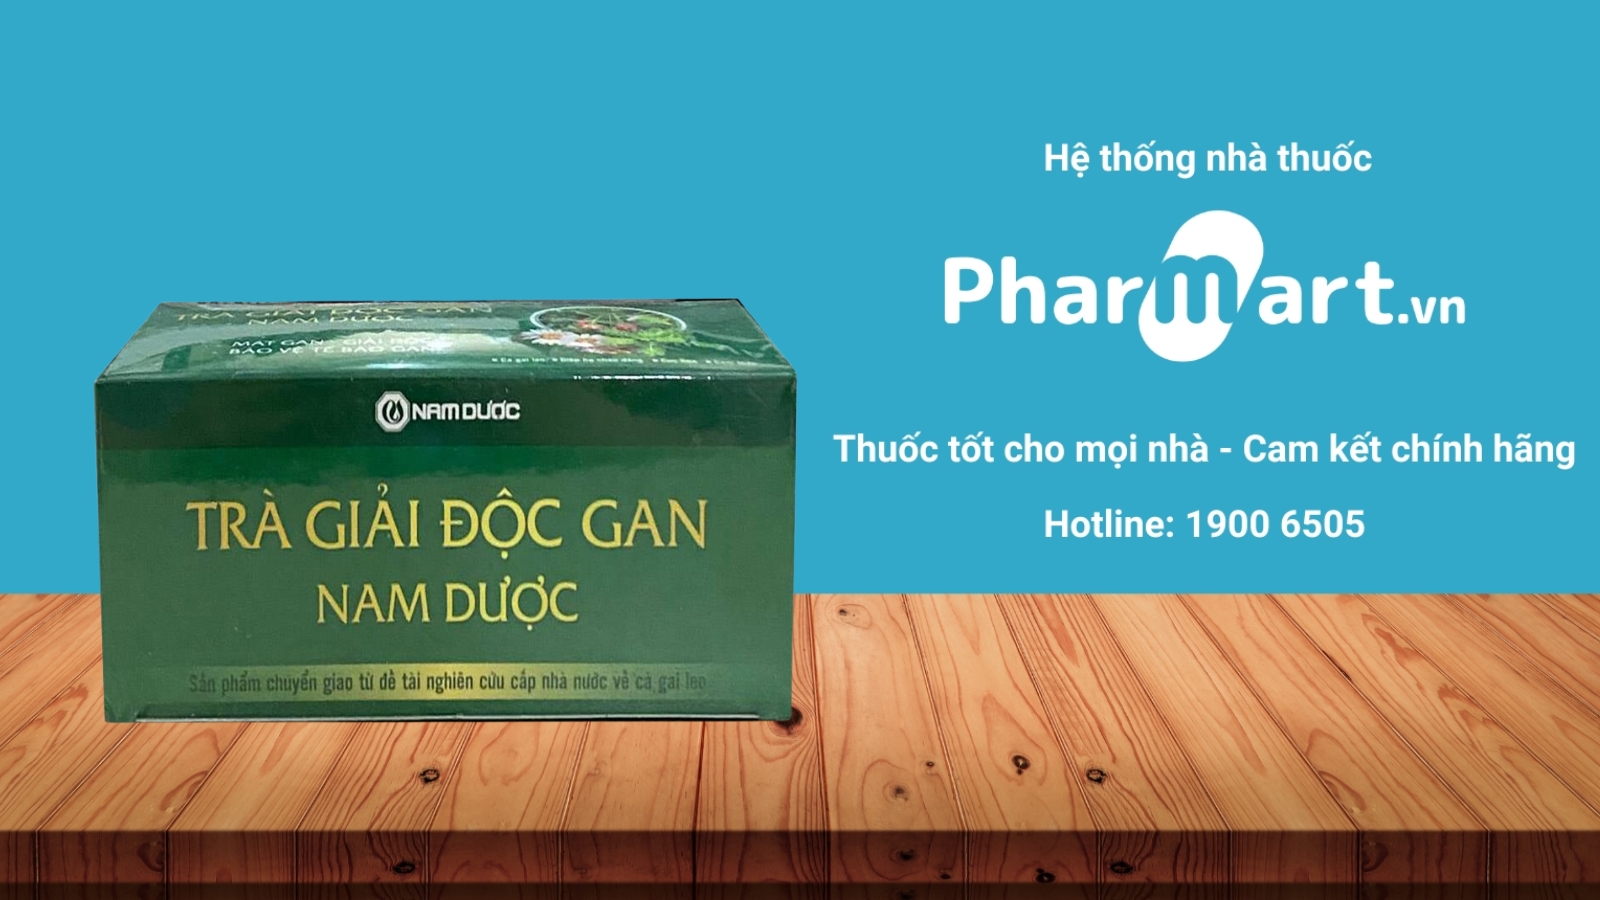 Mua ngay Trà giải độc gan Nam Dược chính hãng tại Pharmart.vn